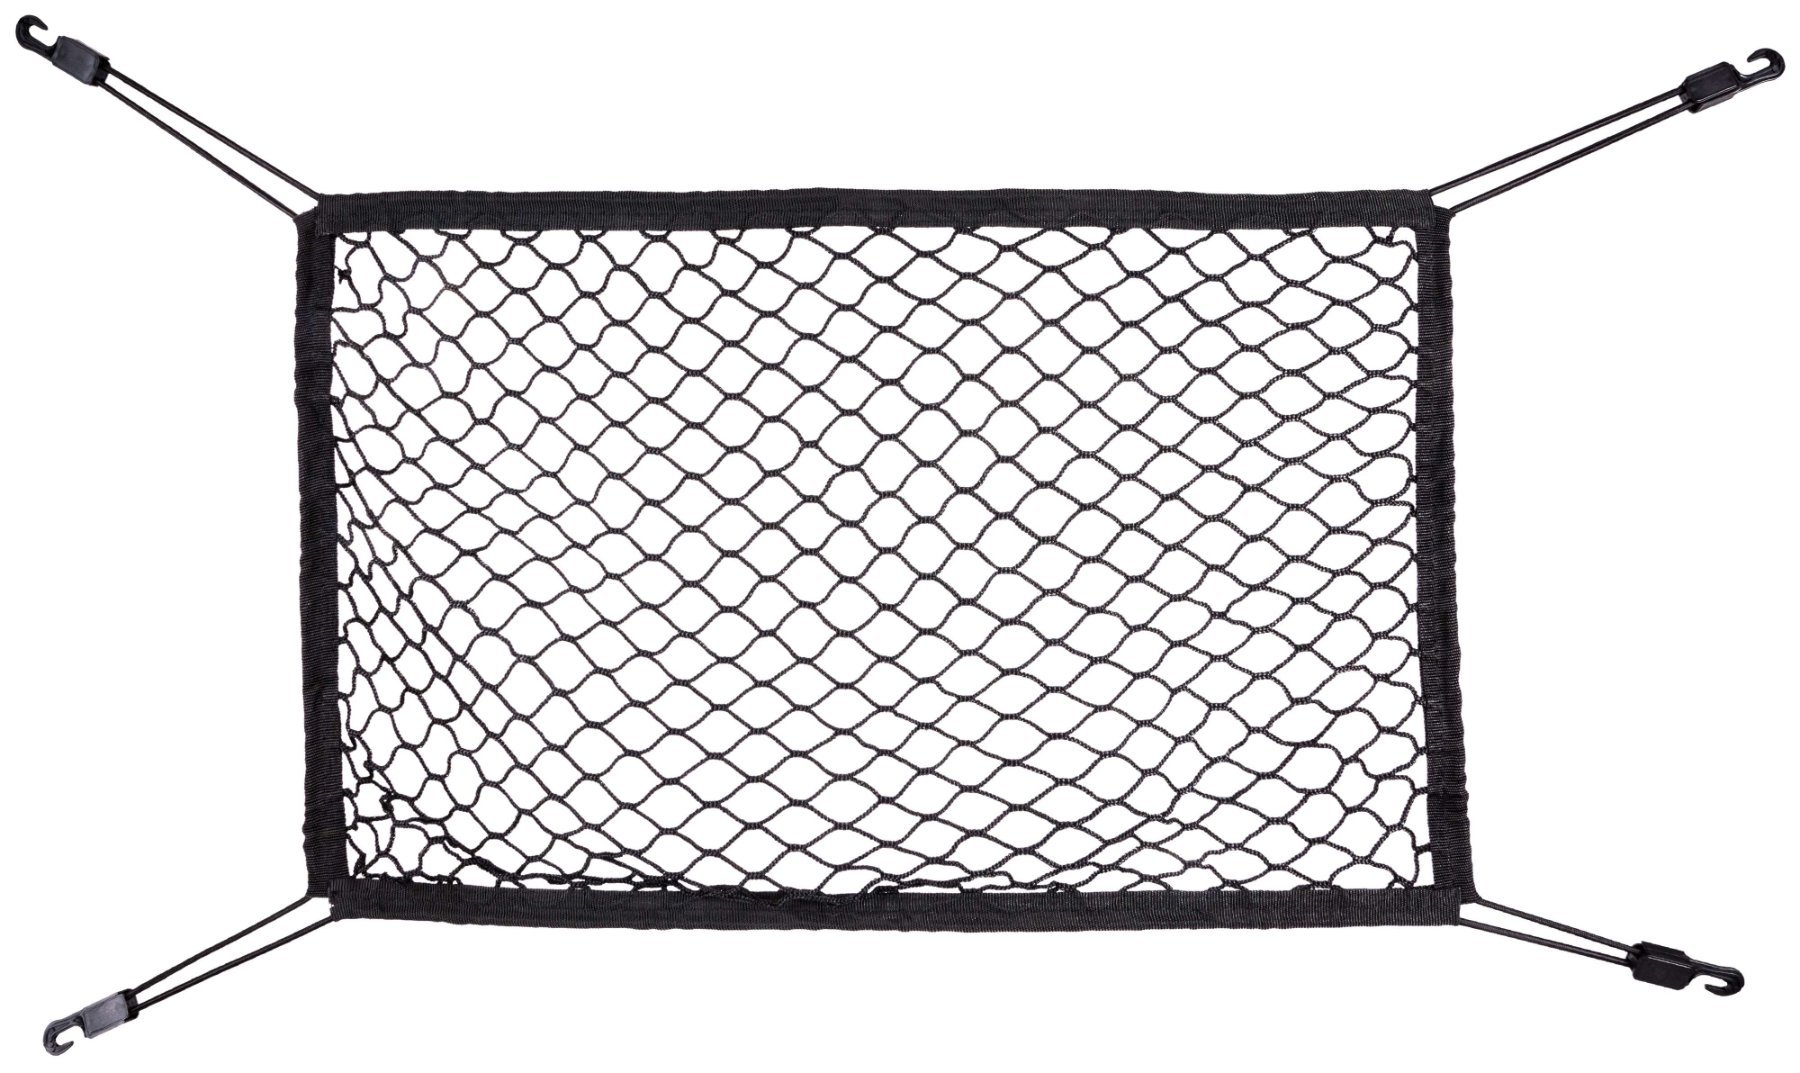 Kofferbaknet Fast Net, bagagenet met haken, stevig auto-bagagenet 50x80cm, universeel beschermnet voor de kofferbak in zwart